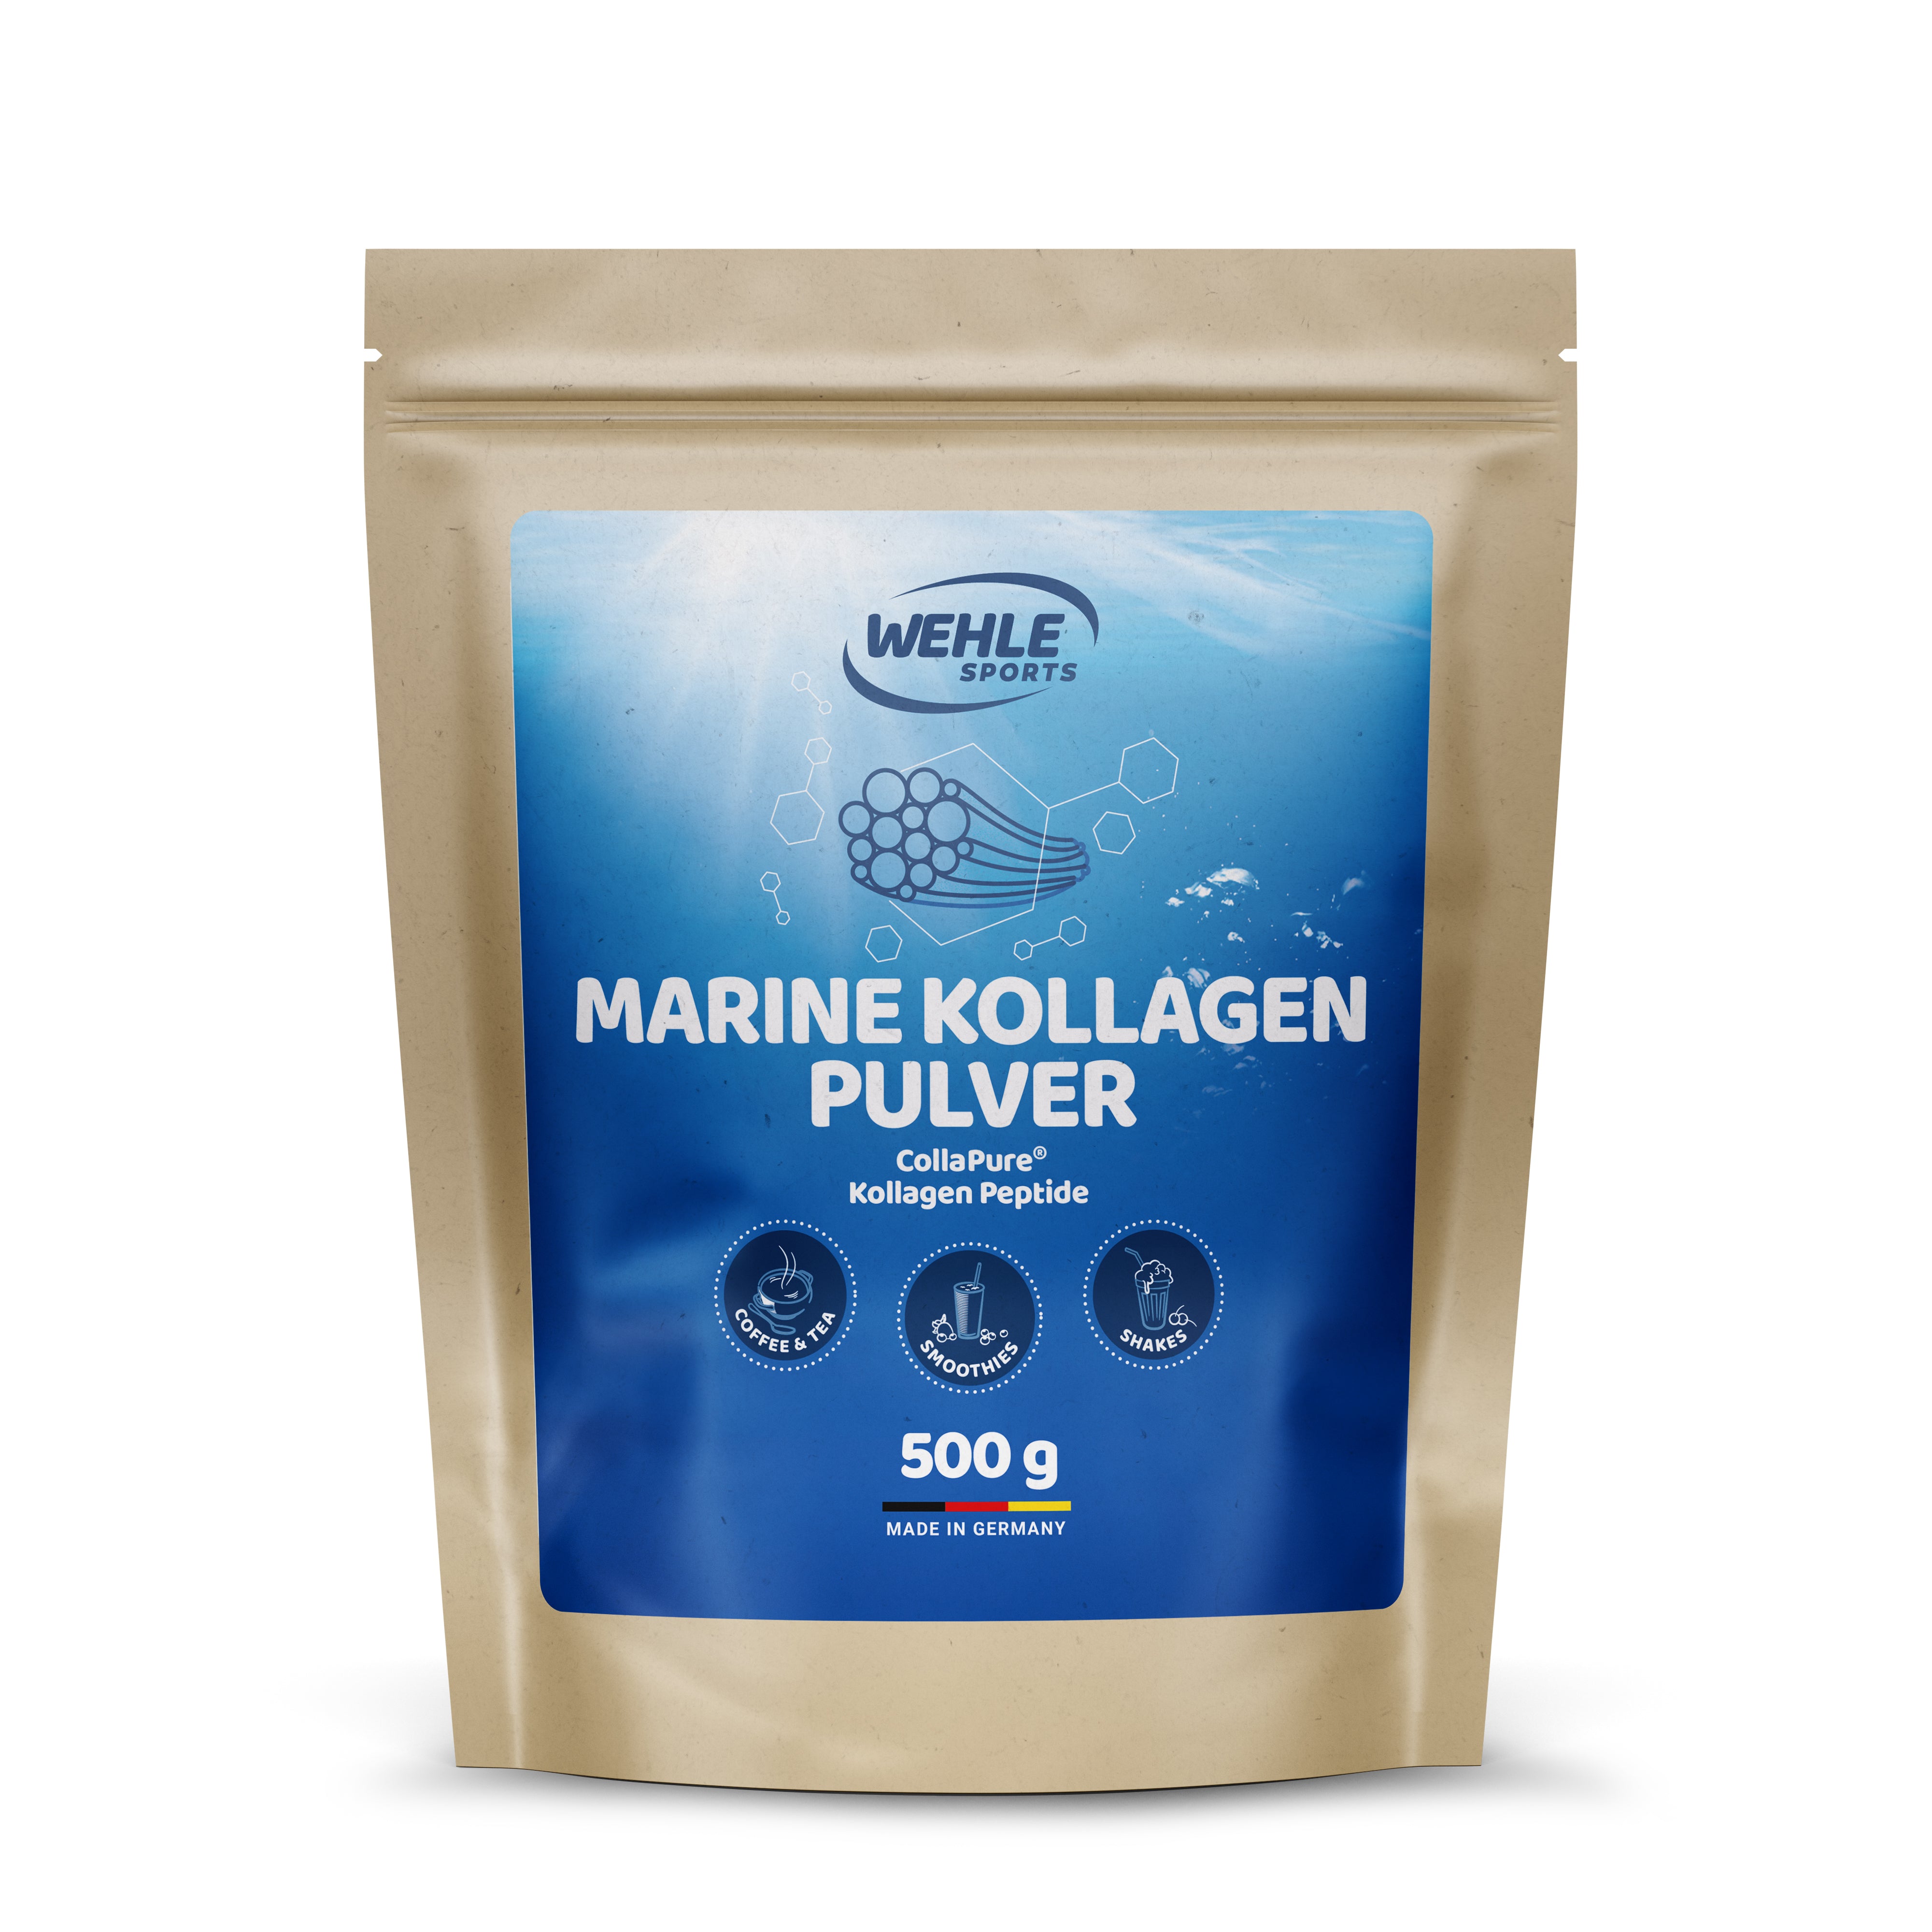 Marine Kollagen Collagen Peptide - 500g